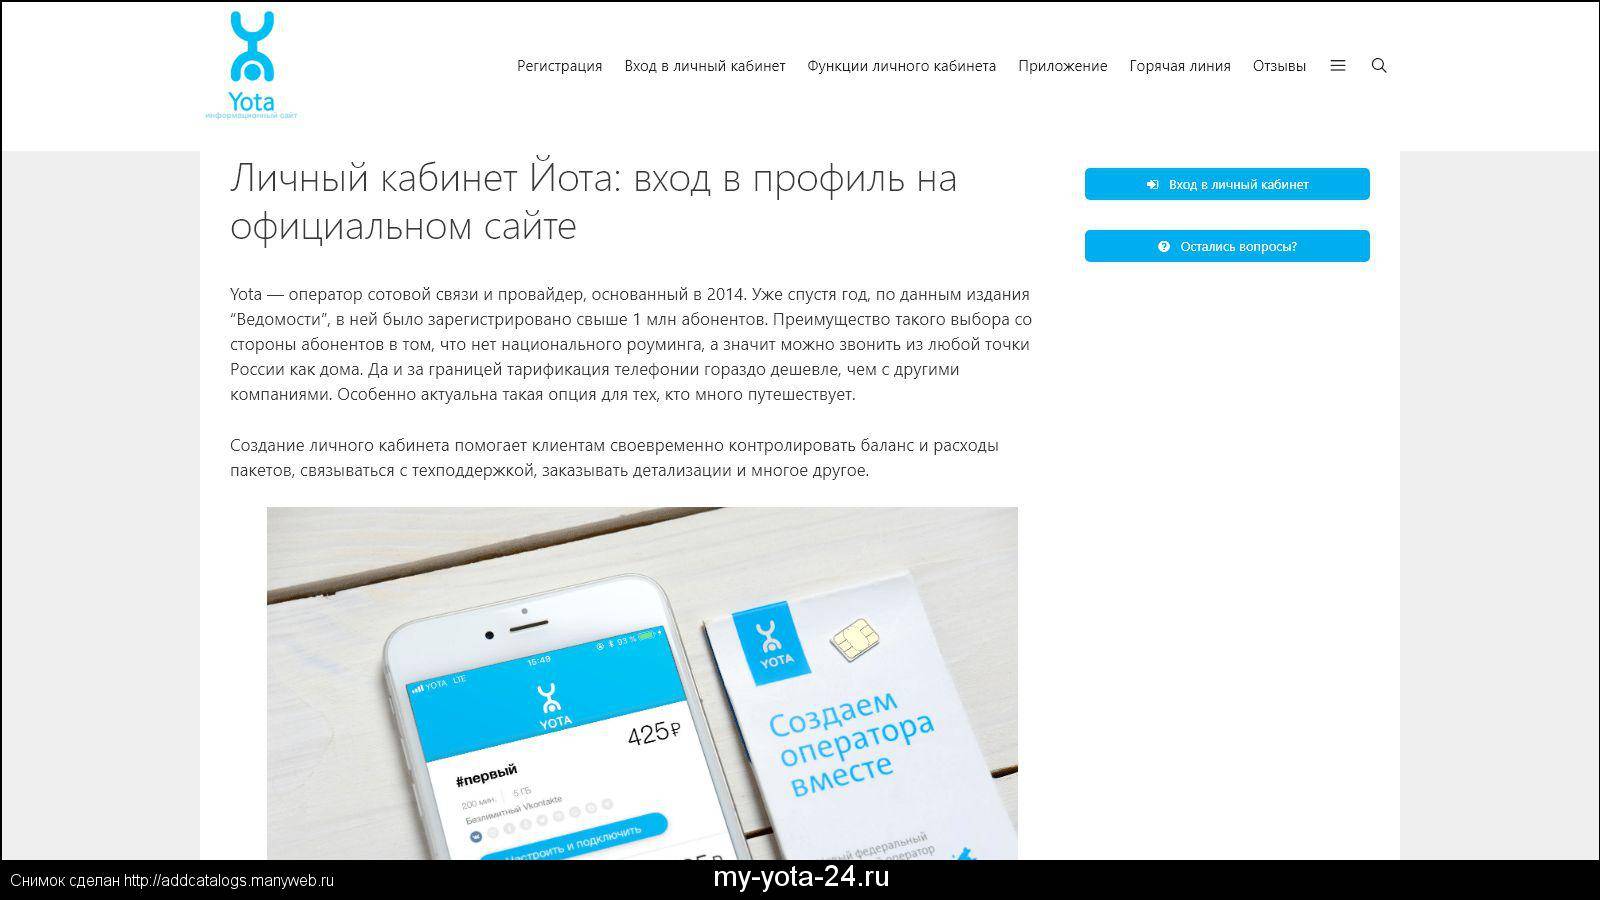 Yota-gid.ru. йота личный кабинет. инструкция, как создать и войти в лк оператора yota